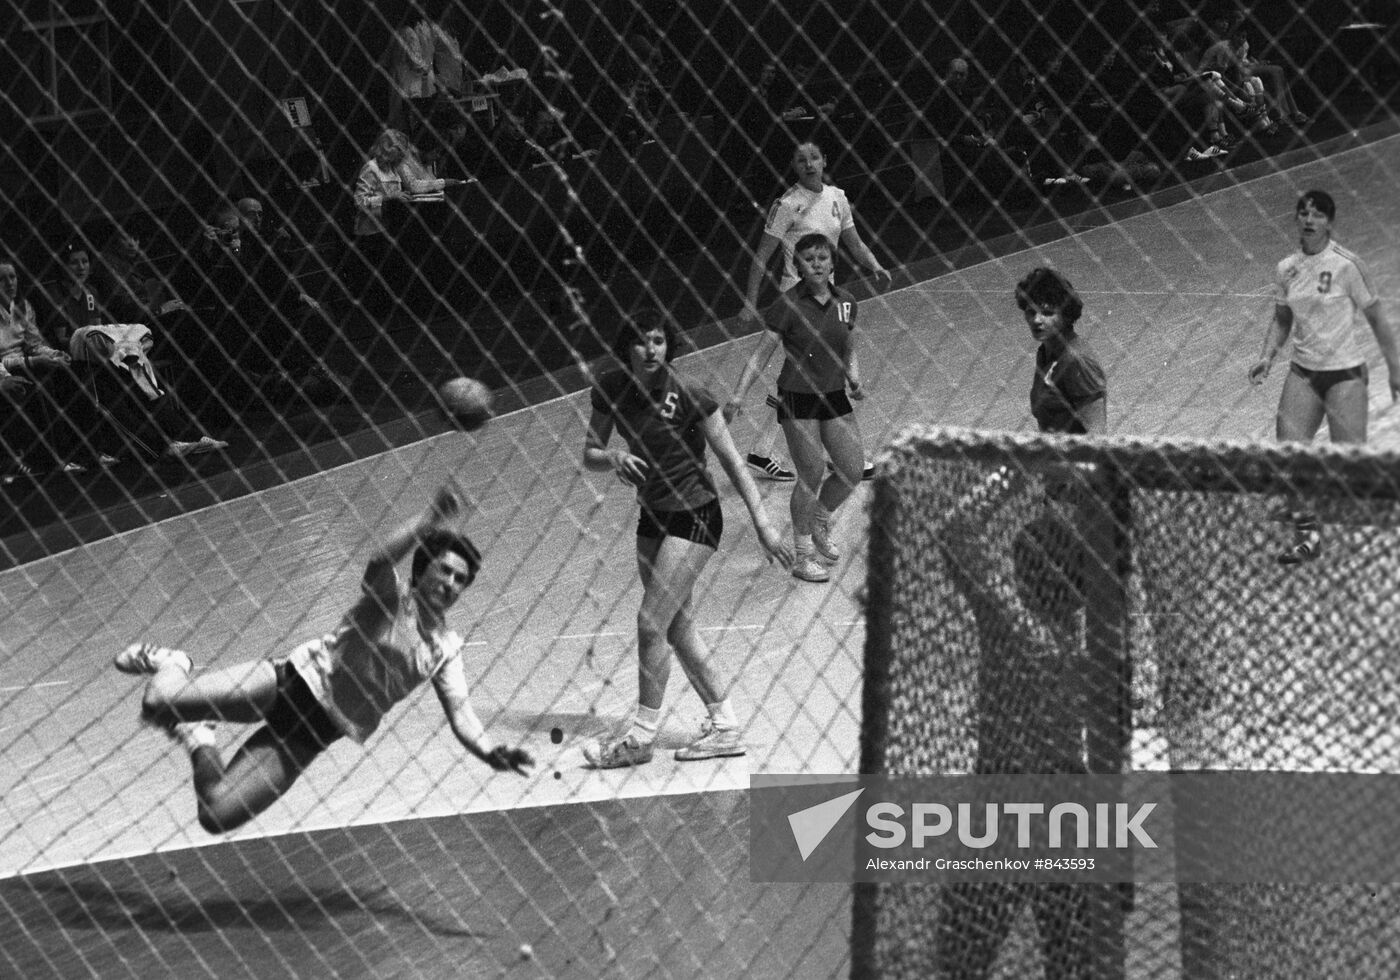 Episode of women's handball match